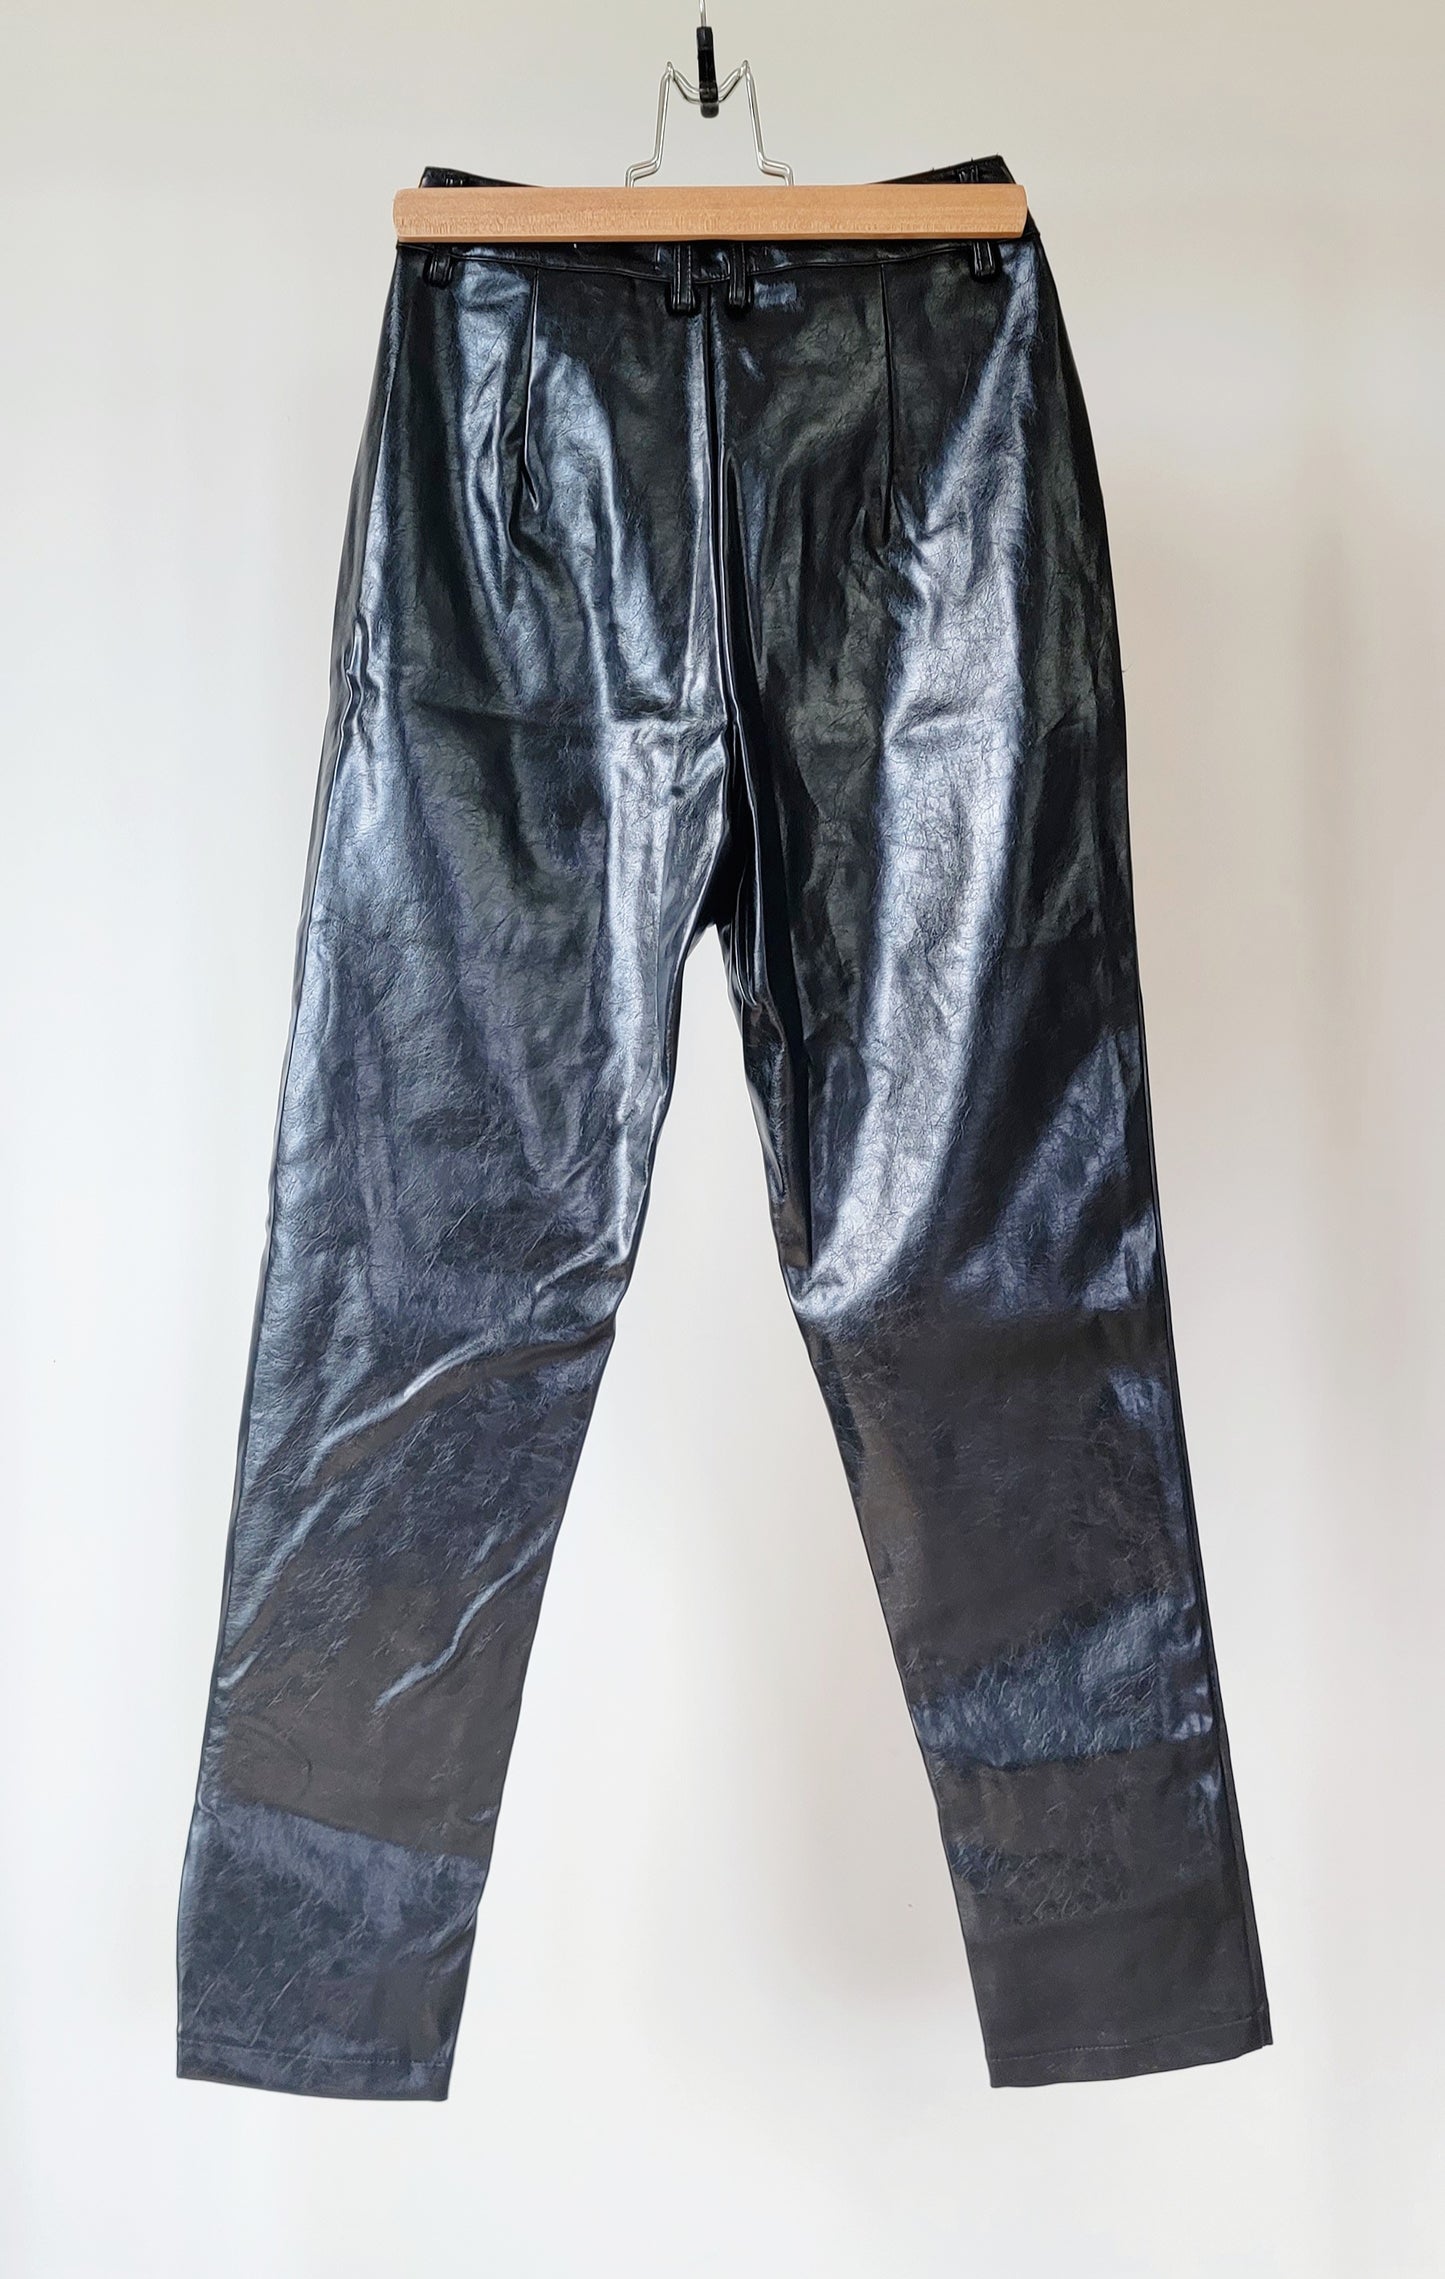 Pantalon imitation cuir